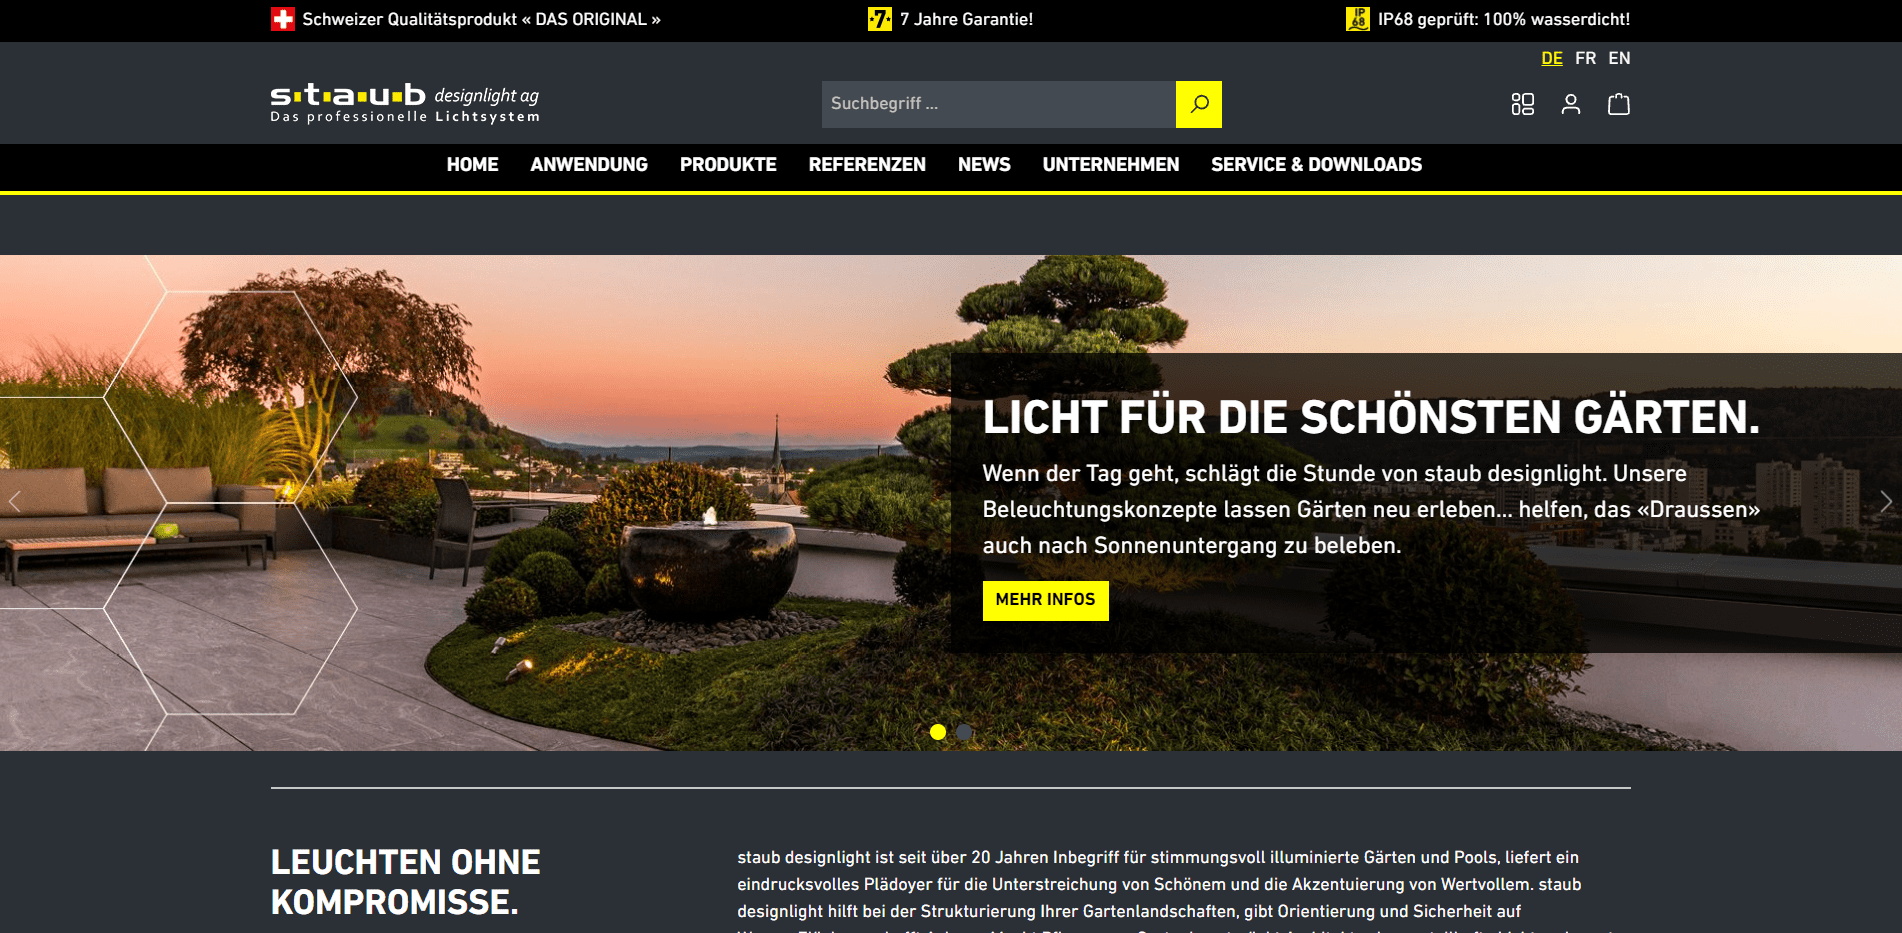 NEUE WEBSITE FÜR STAUB DESIGNLIGHT